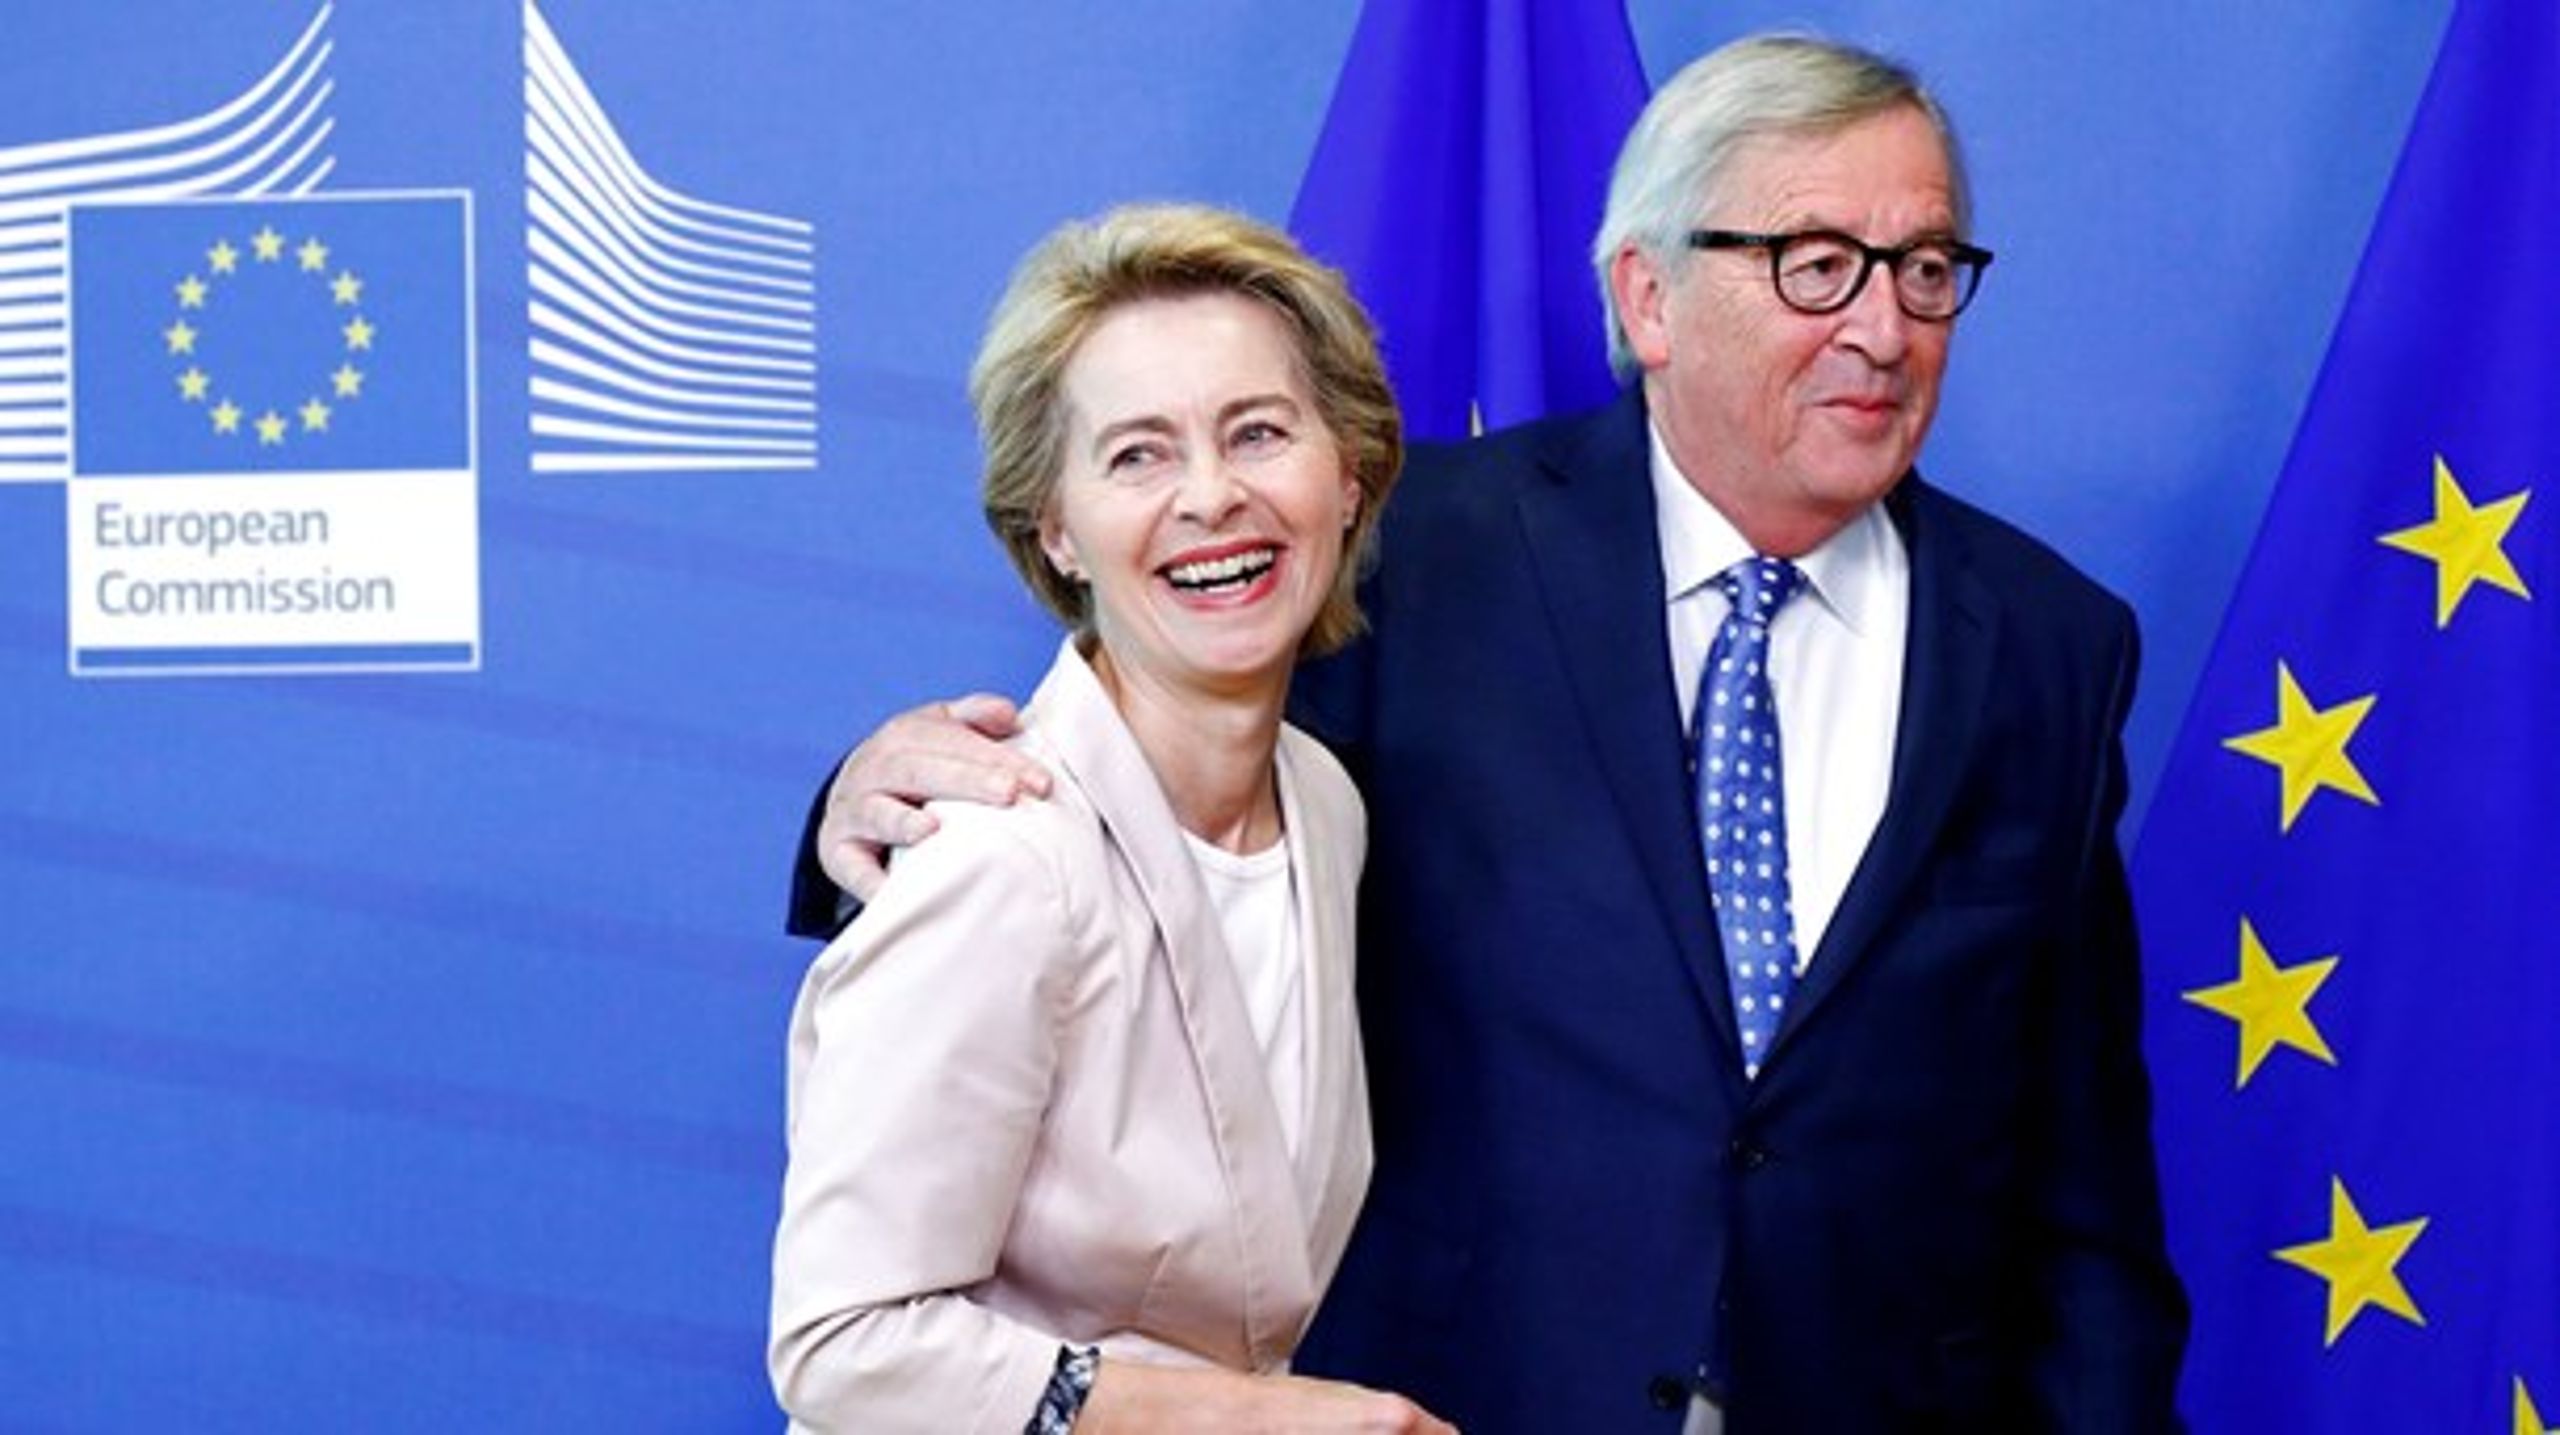 Tyske Ursula von der Leyen er nomineret til den mest magtfulde post i EU. Her ses hun med den nuværende kommisionsformand&nbsp;Jean-Claude Juncker.